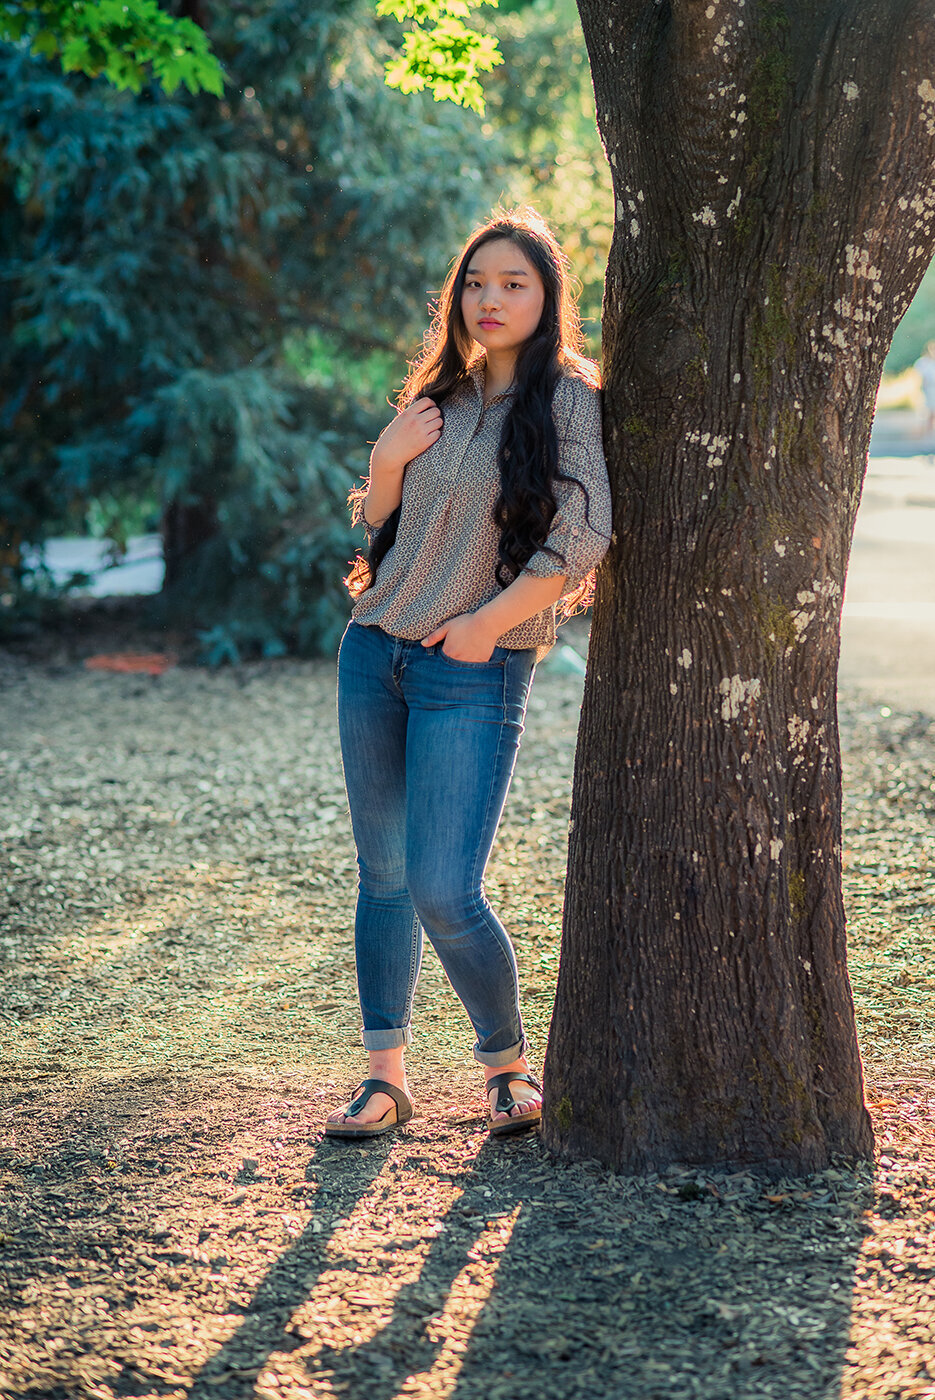 senior girl leaning on tree